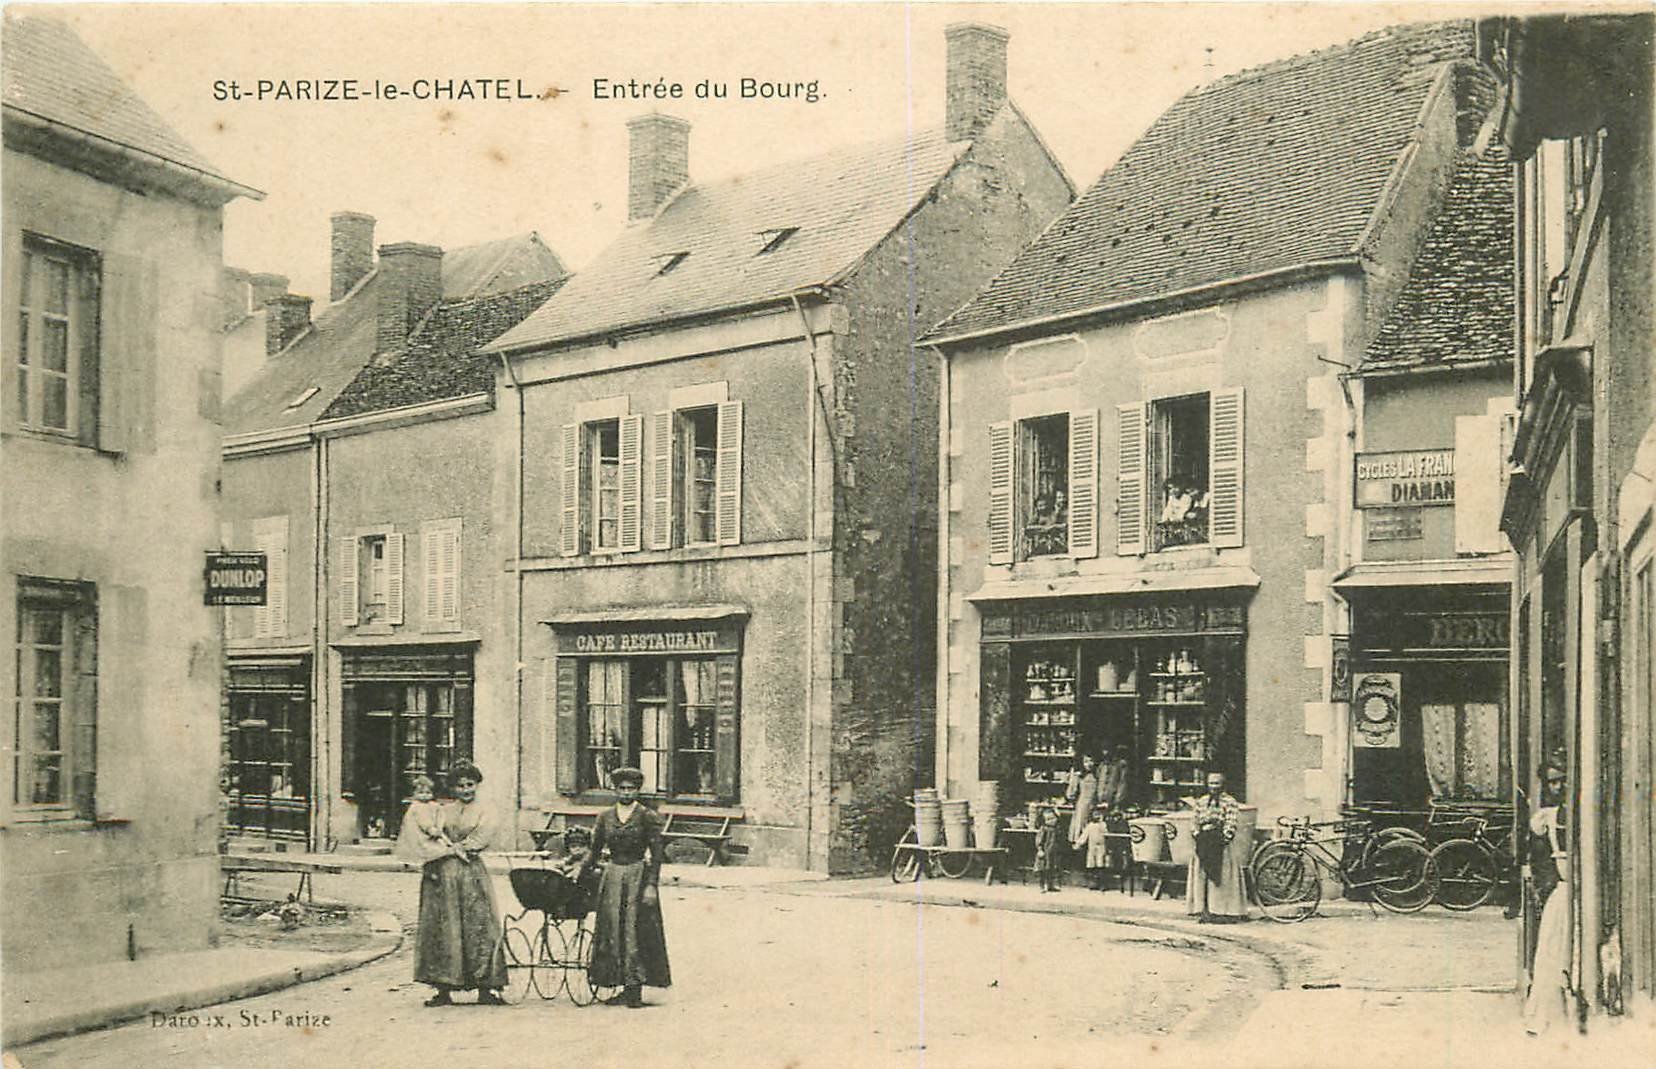 WW 58 SAINT-PARIZE-LE-CHATEL. Café Restaurant à l'Entrée du Bourg femmes avec landau